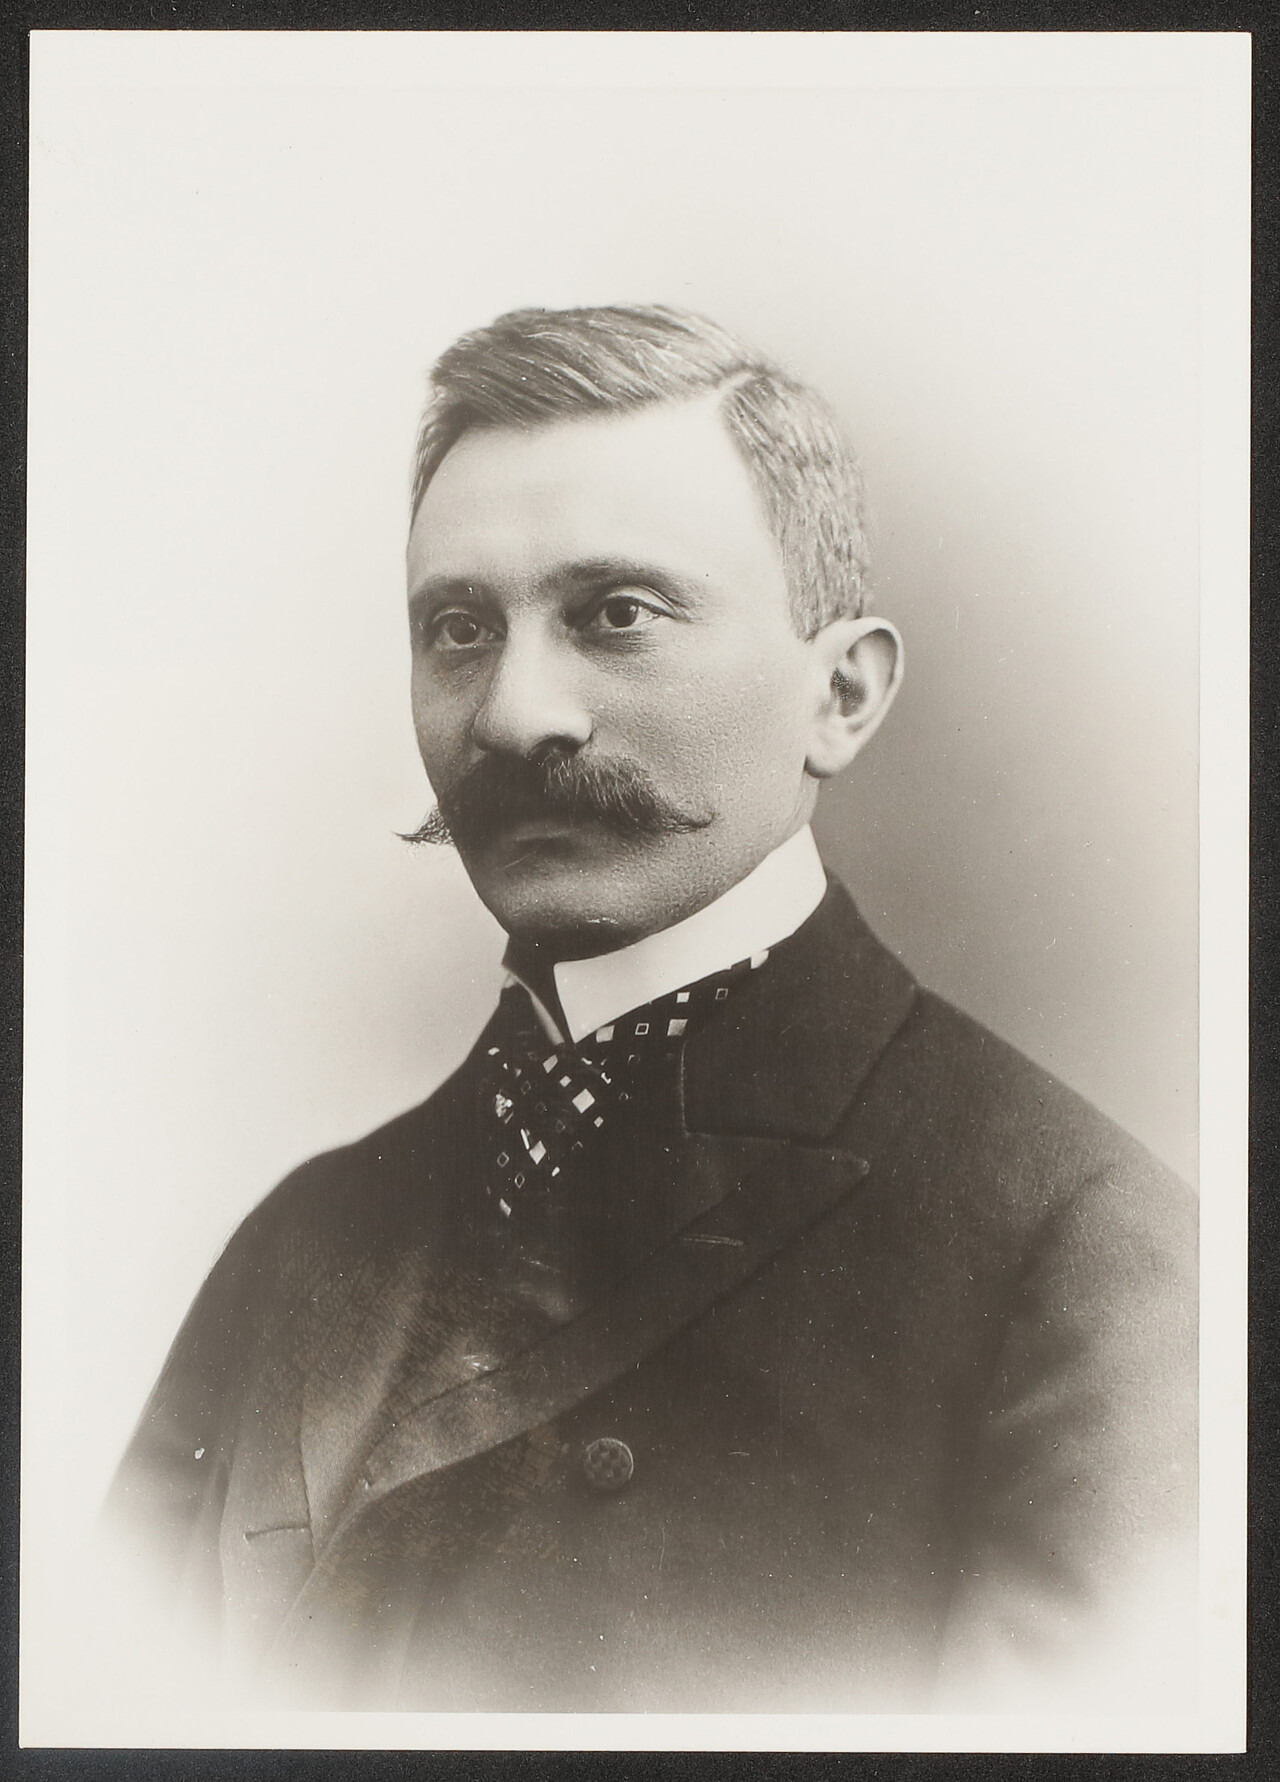 Die schwarz-weiß Aufnahme ist ein historisches Porträt des österreichischen Chirurgen Emmerich Ullmann. Er ist zur linken Seite gedreht und schaut an der Kamera vorbei. Er trägt einen geraden Scheitel, Schnäuzer und einen Anzug mit weißem Stehkragen.